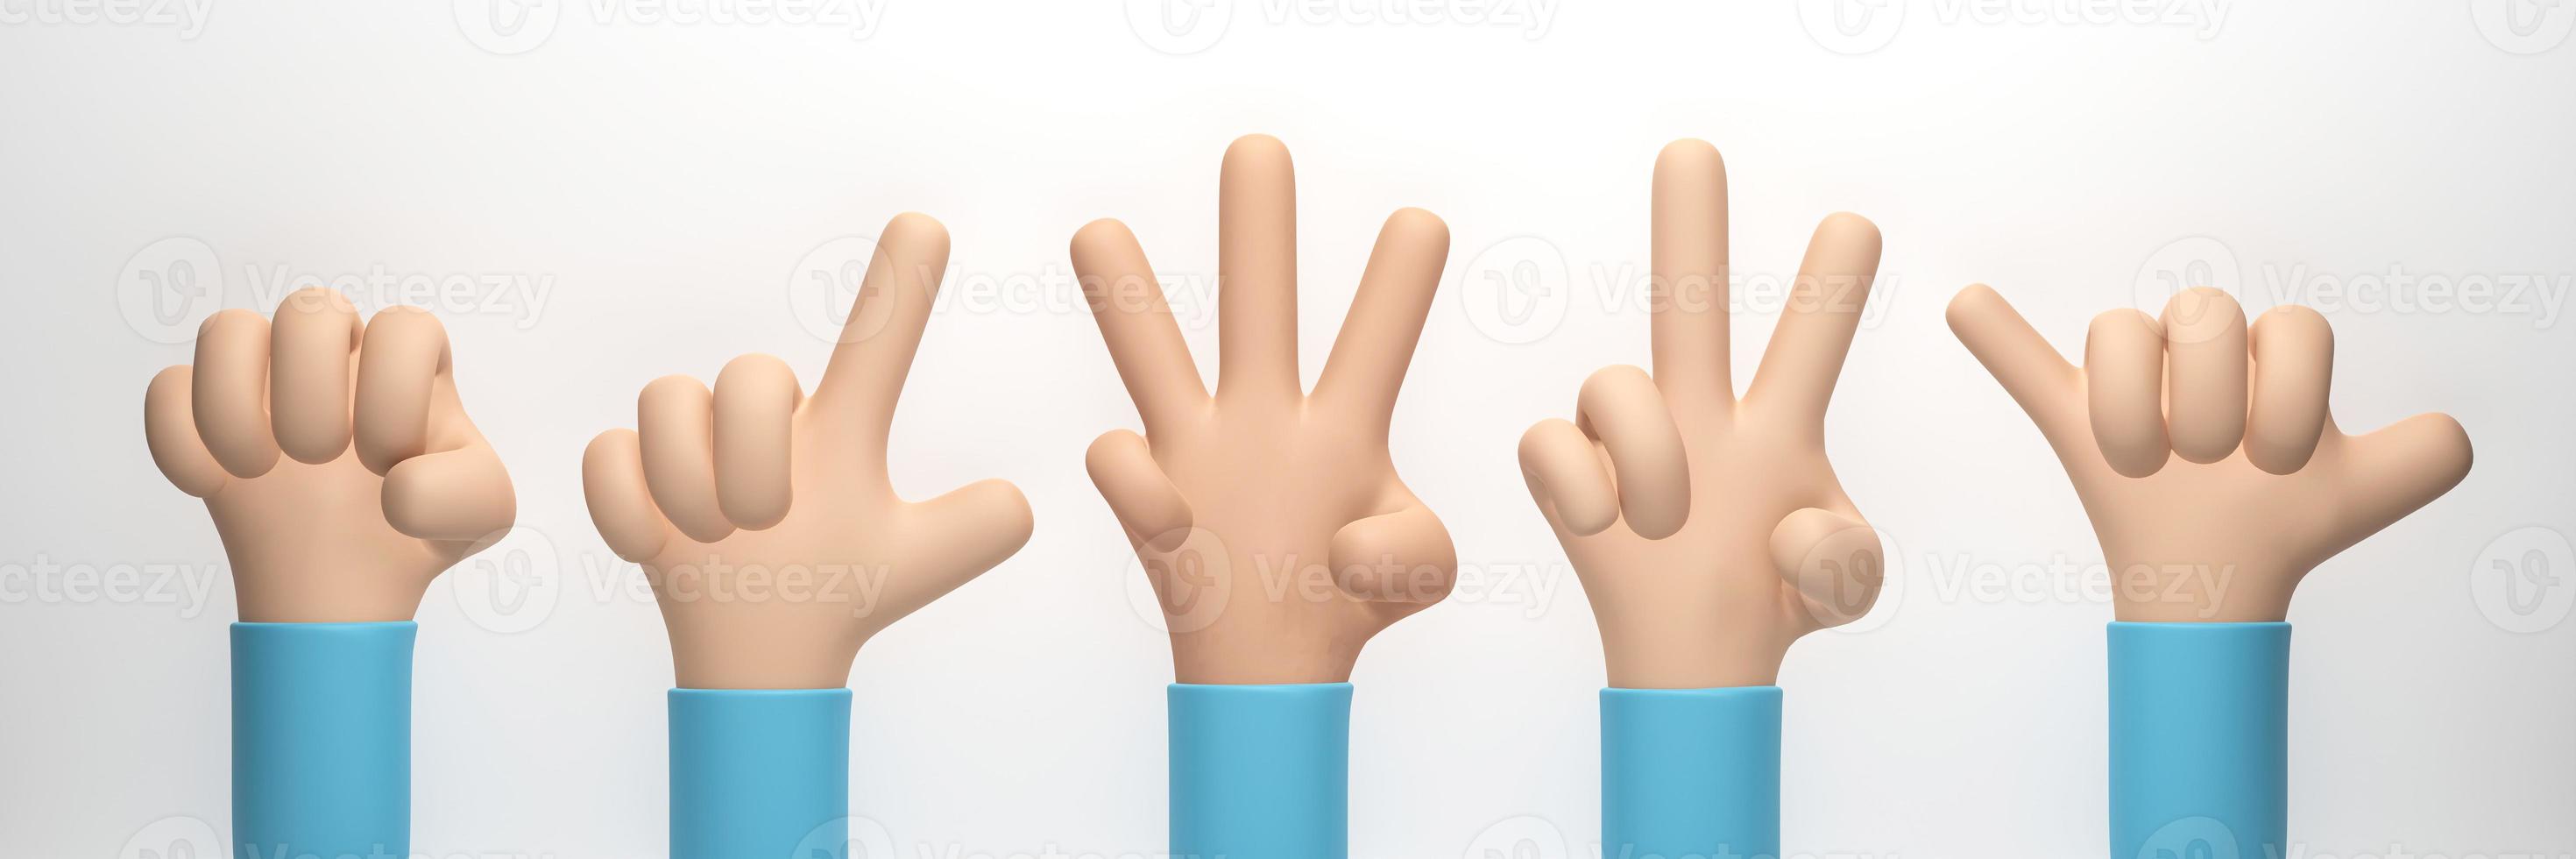 representación 3d, ilustración 3d. mano muestra diferentes gestos aislados sobre fondo blanco. estilo de dibujos animados de manos simples foto